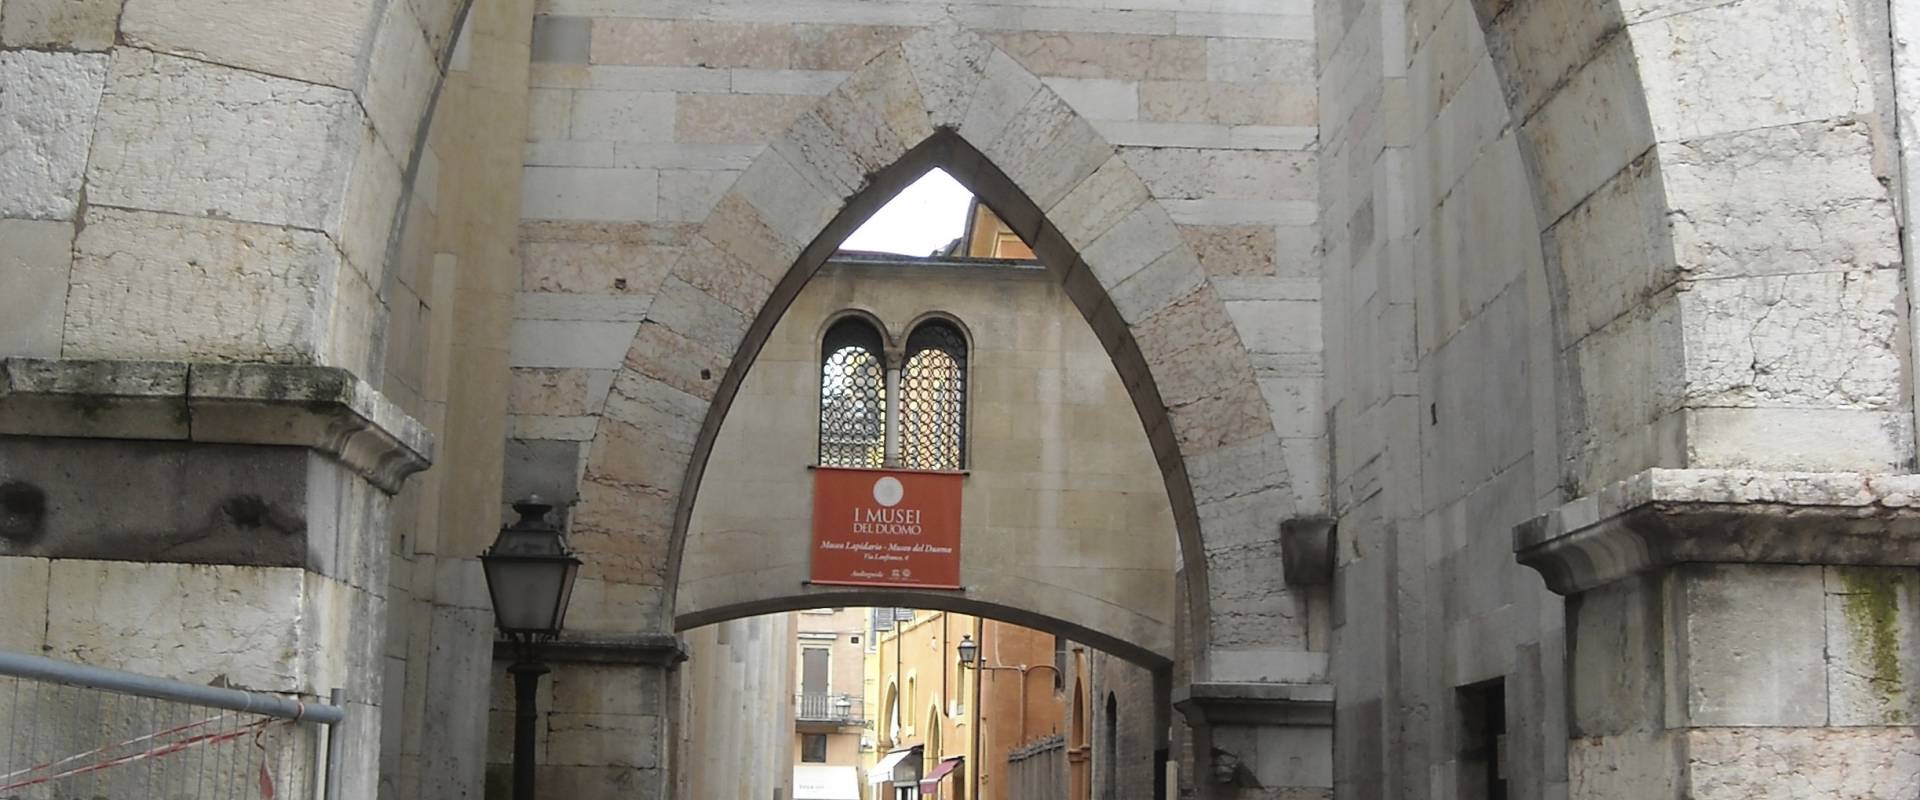 Duomo di Modena, fianco sinistro foto di Giuch86